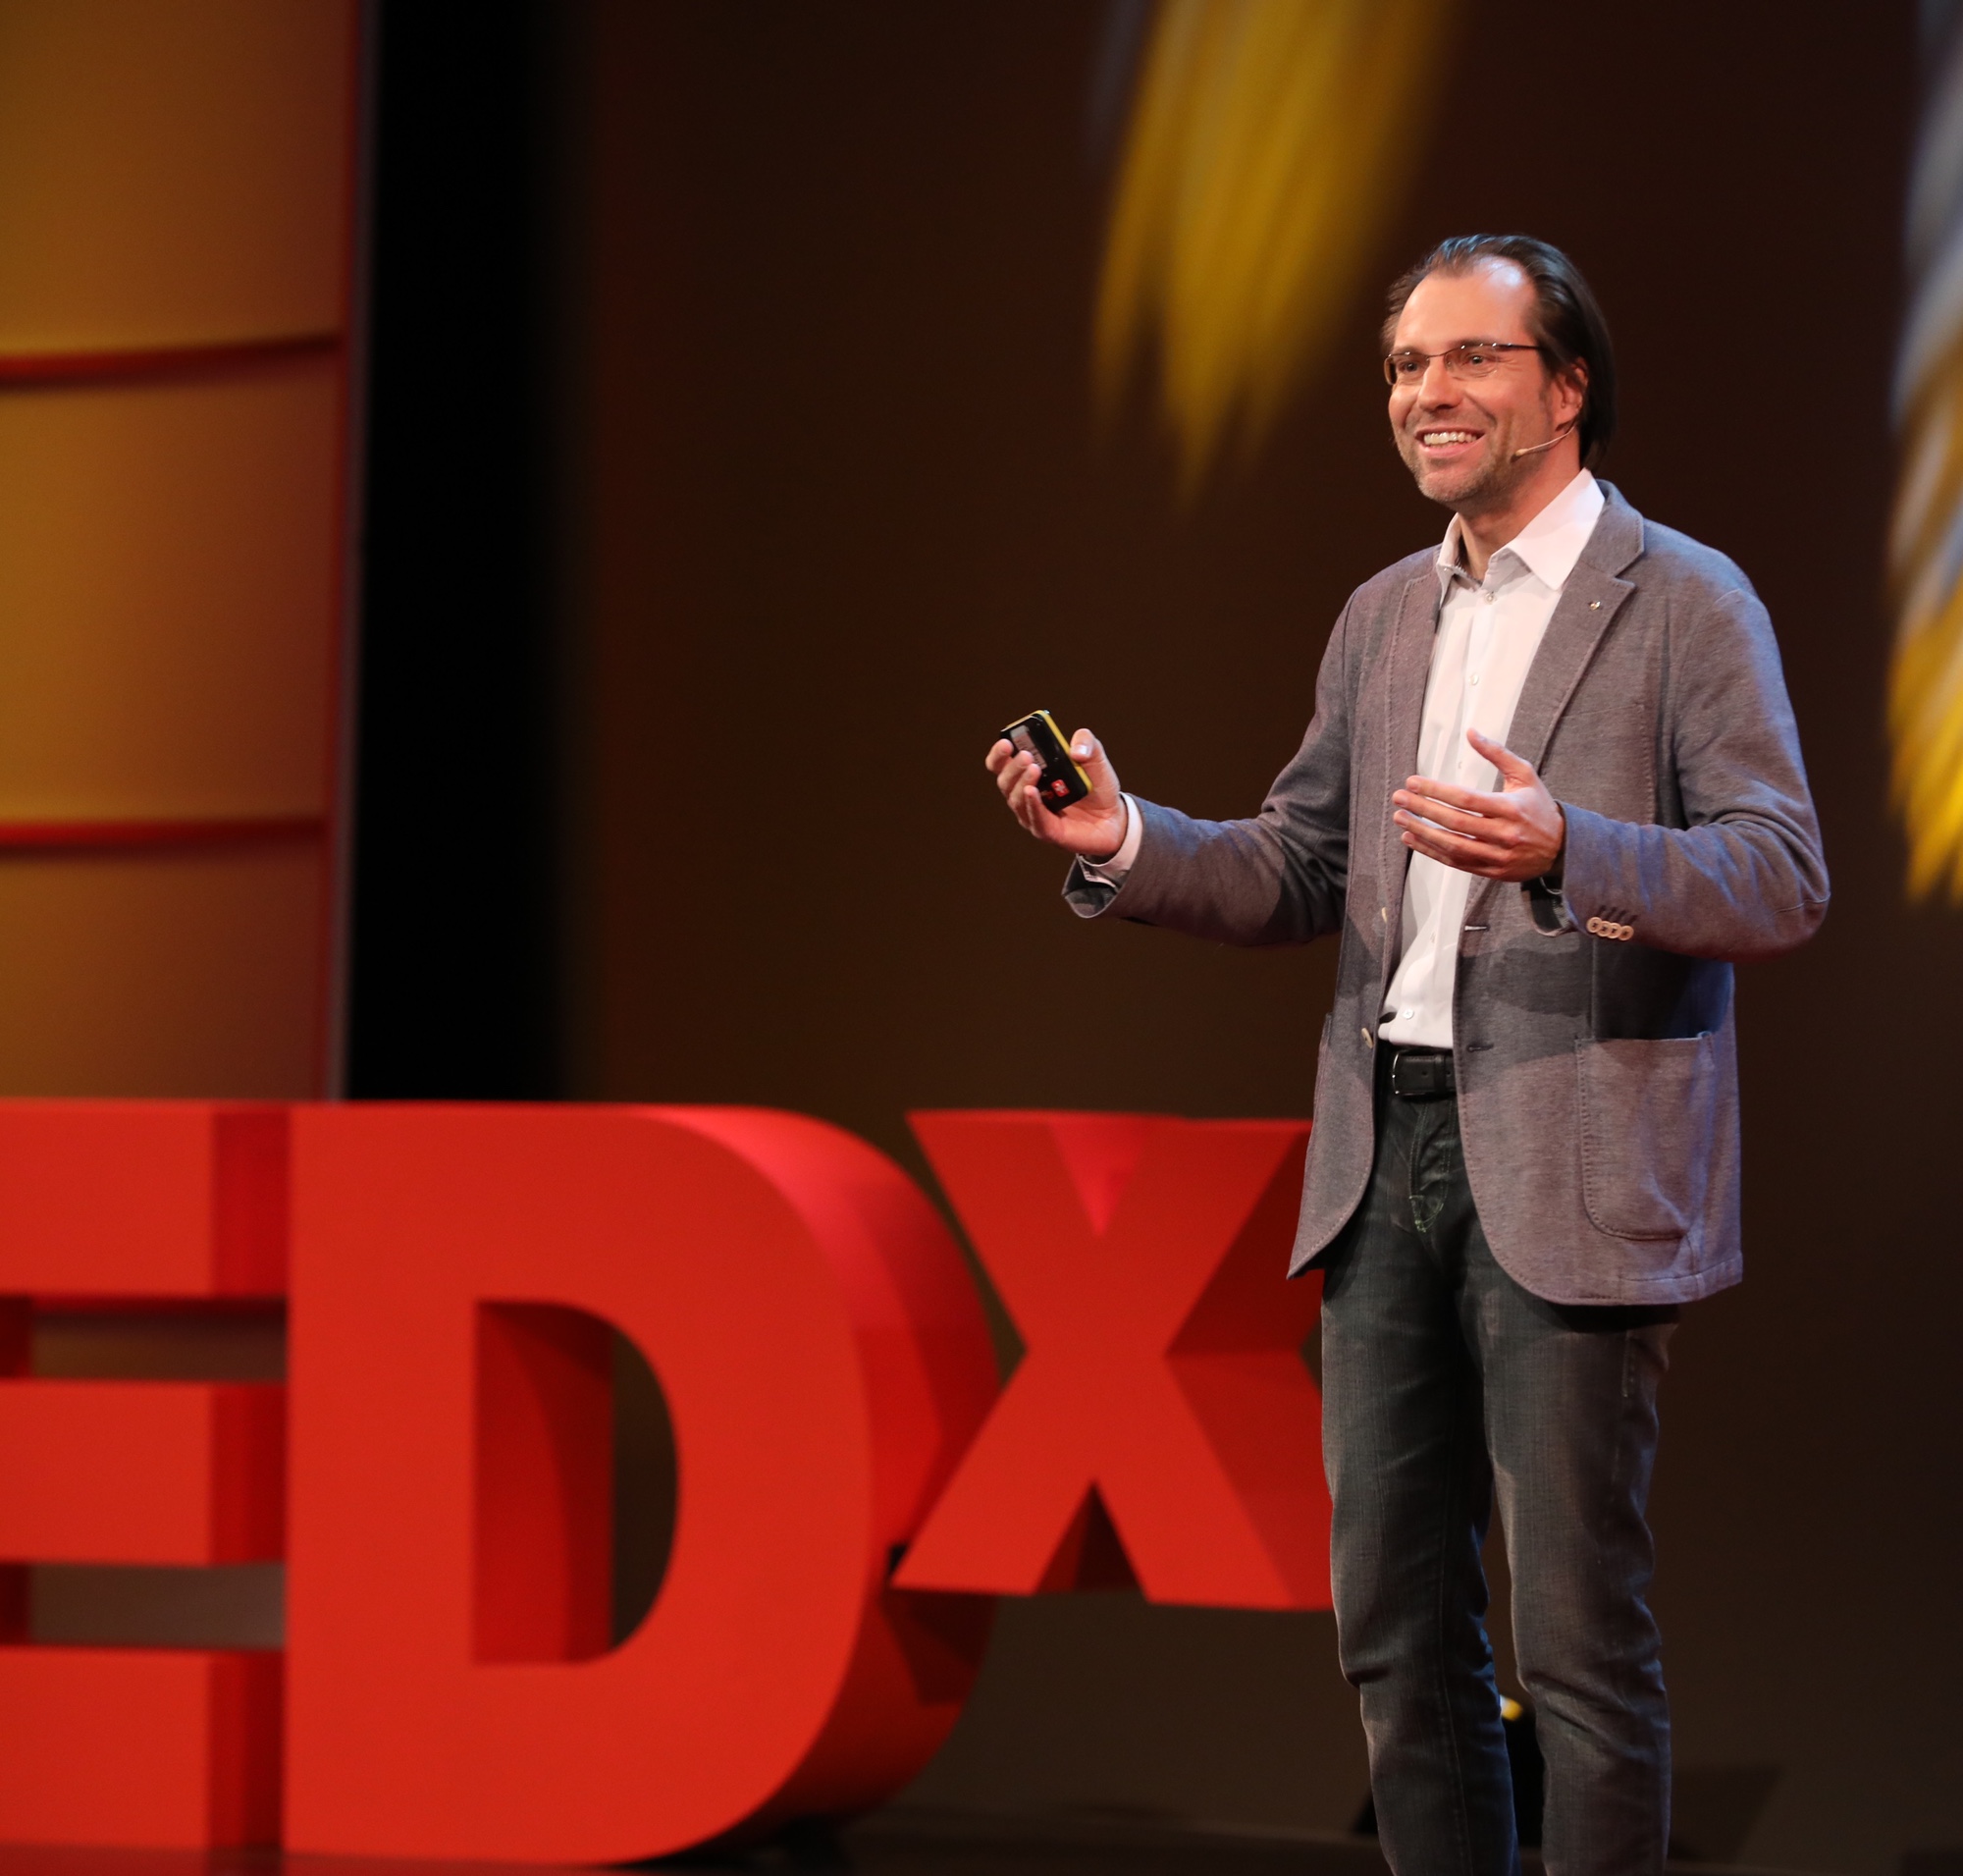 Foto: Auftritt von Alexander Wagner bei TEDxZurich 2016